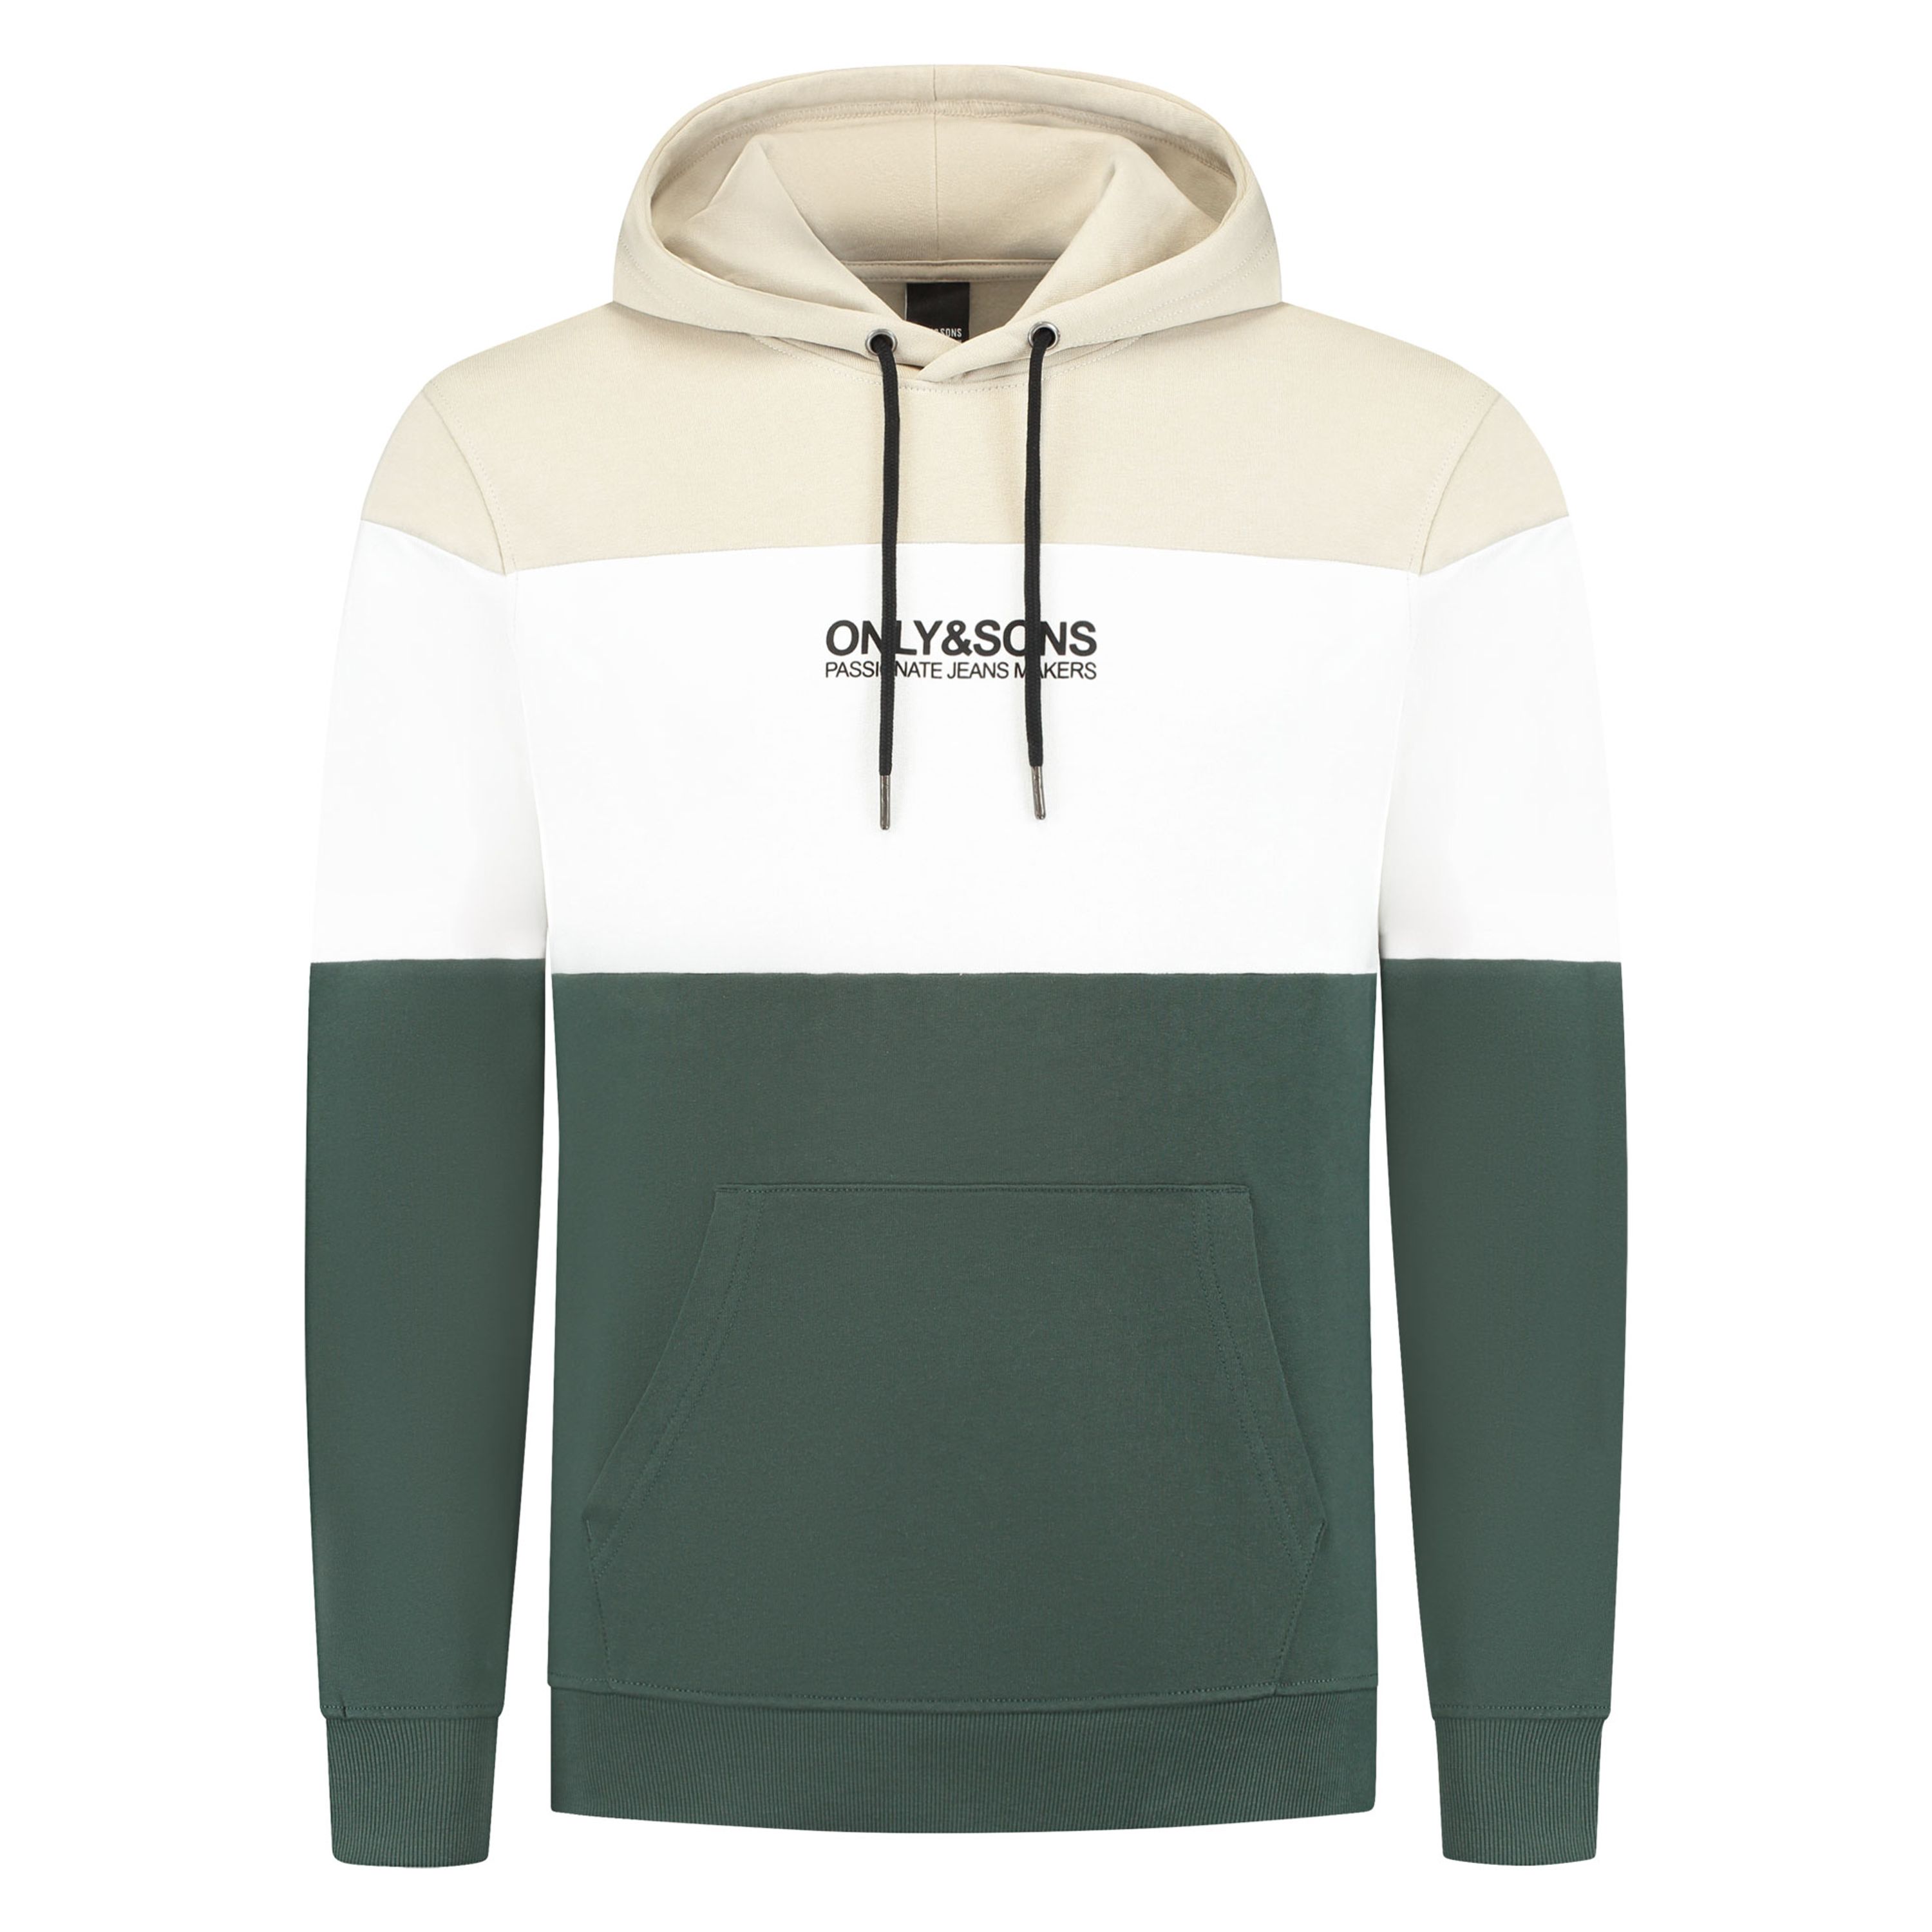 ONLY & SONS hoodie ONSBAS met logo groen